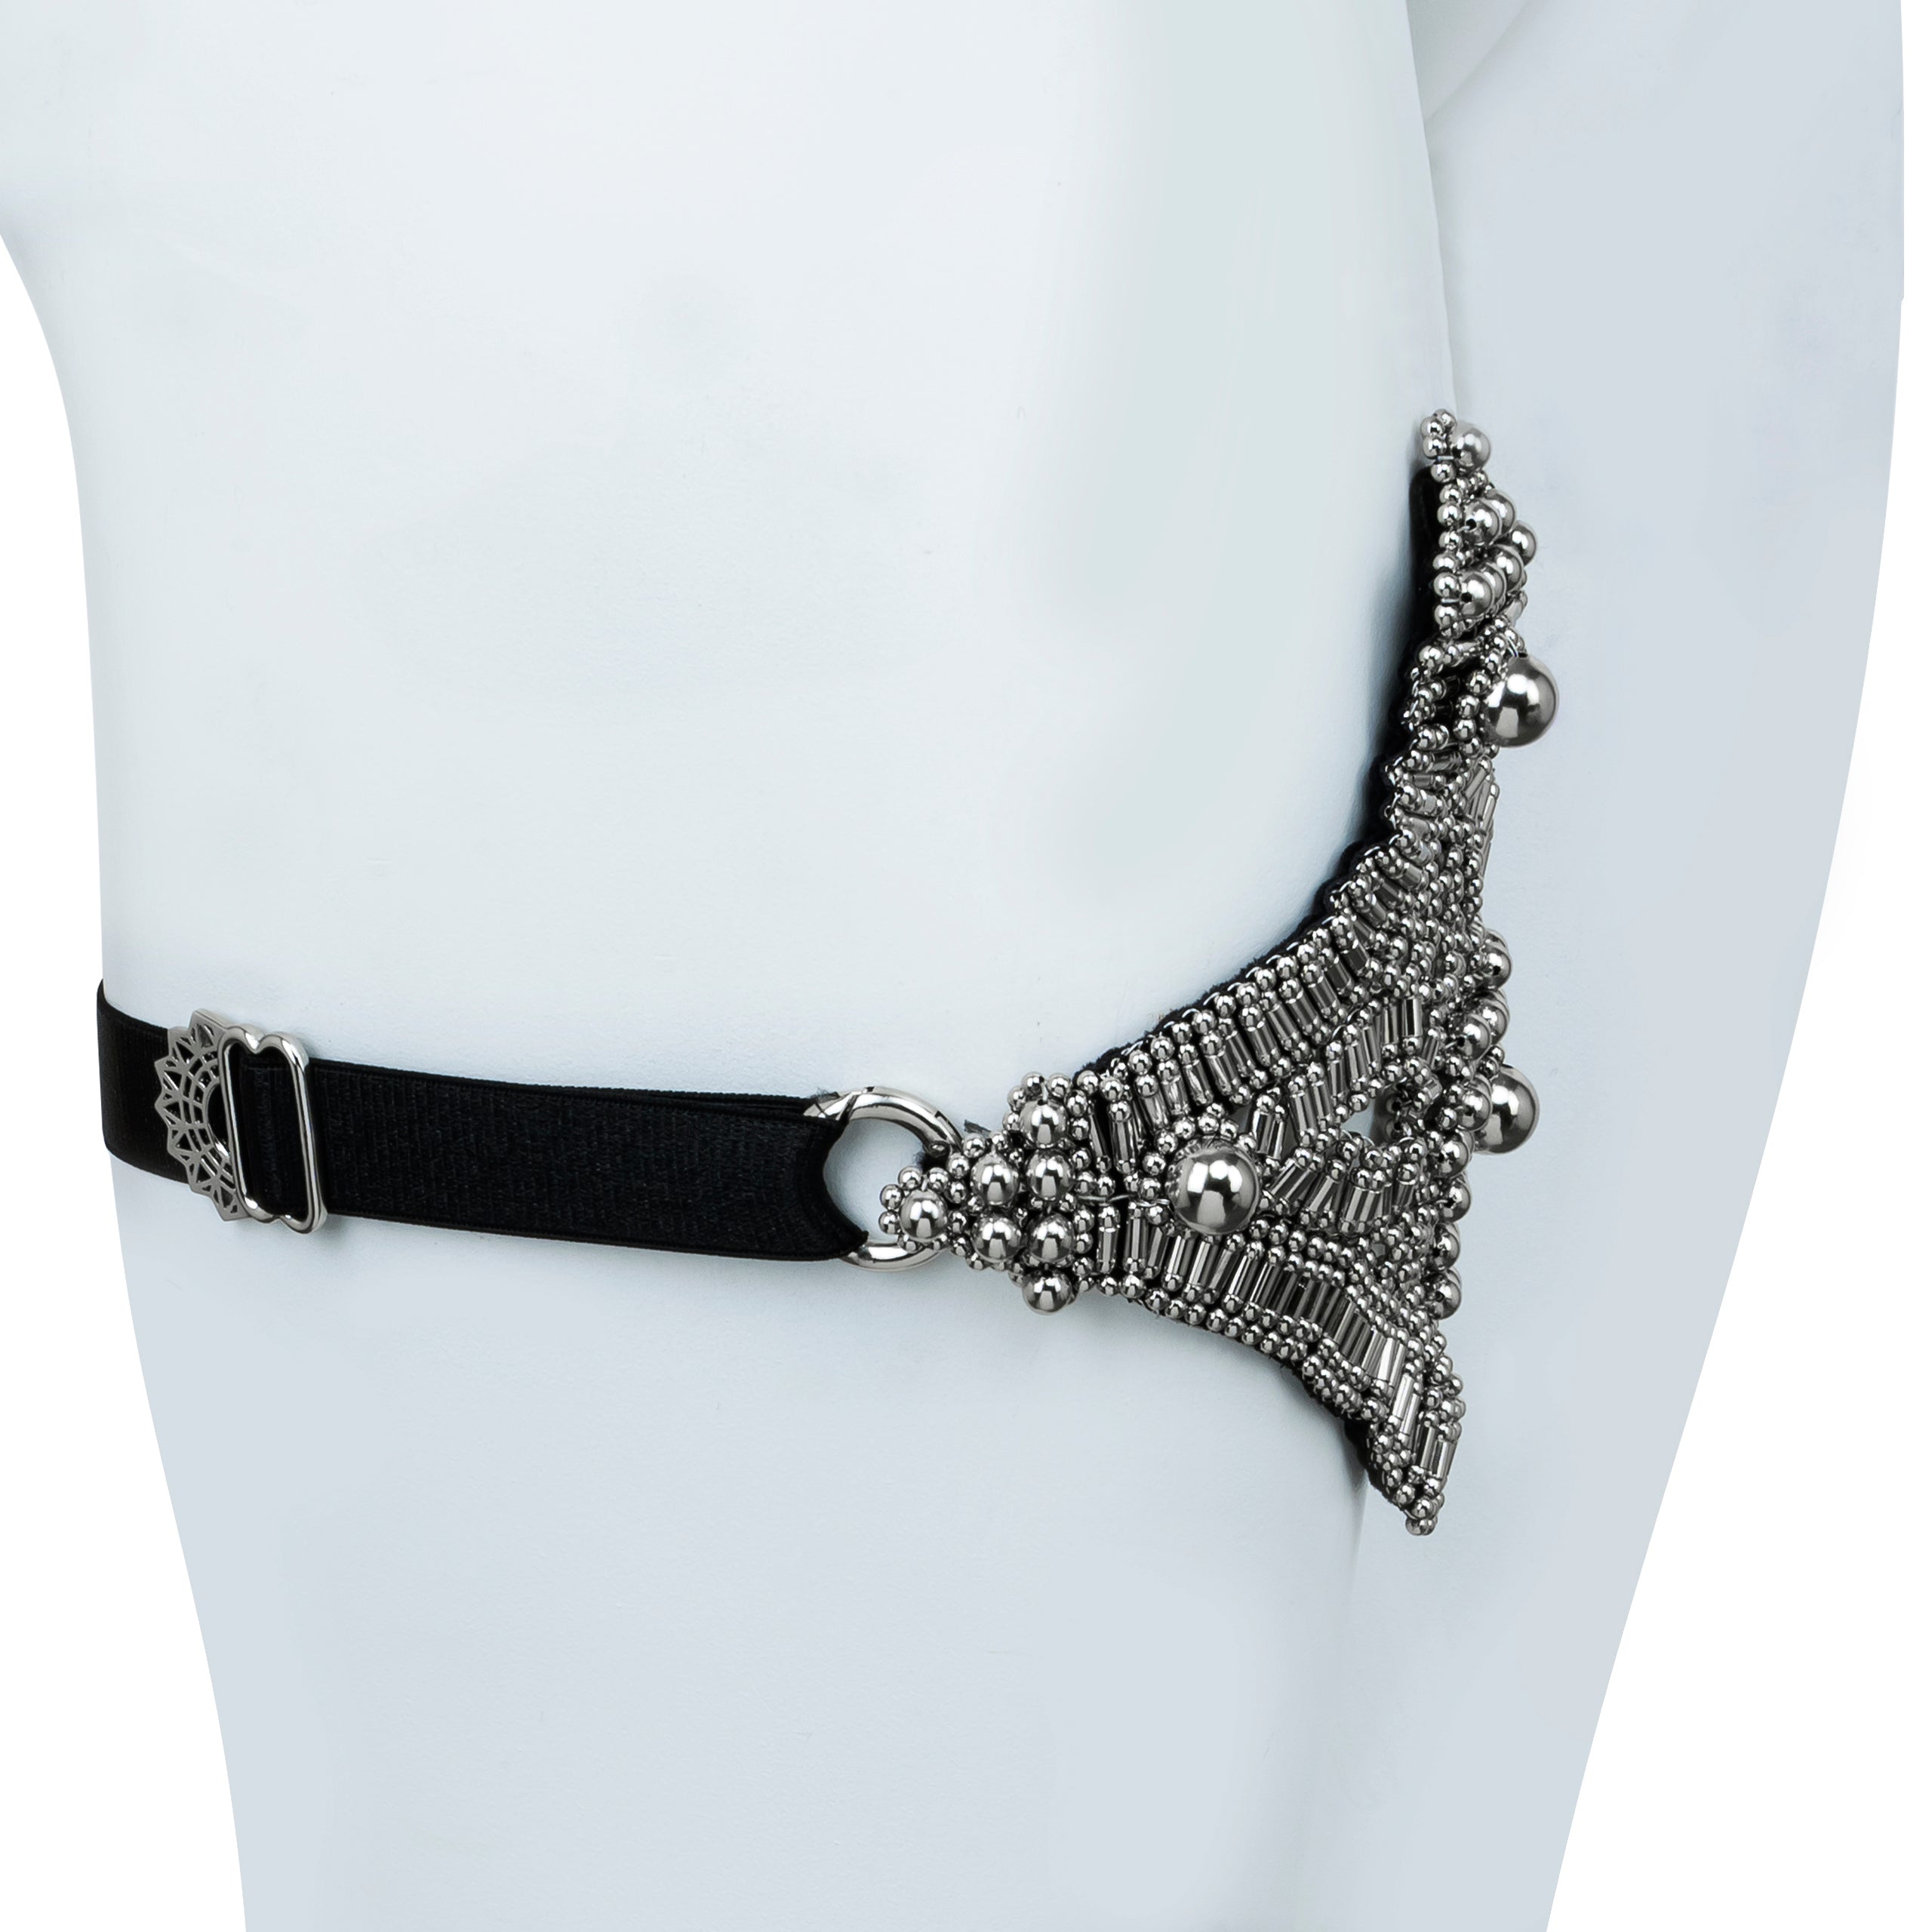 Khutulun Modular Garter Belt in Silver